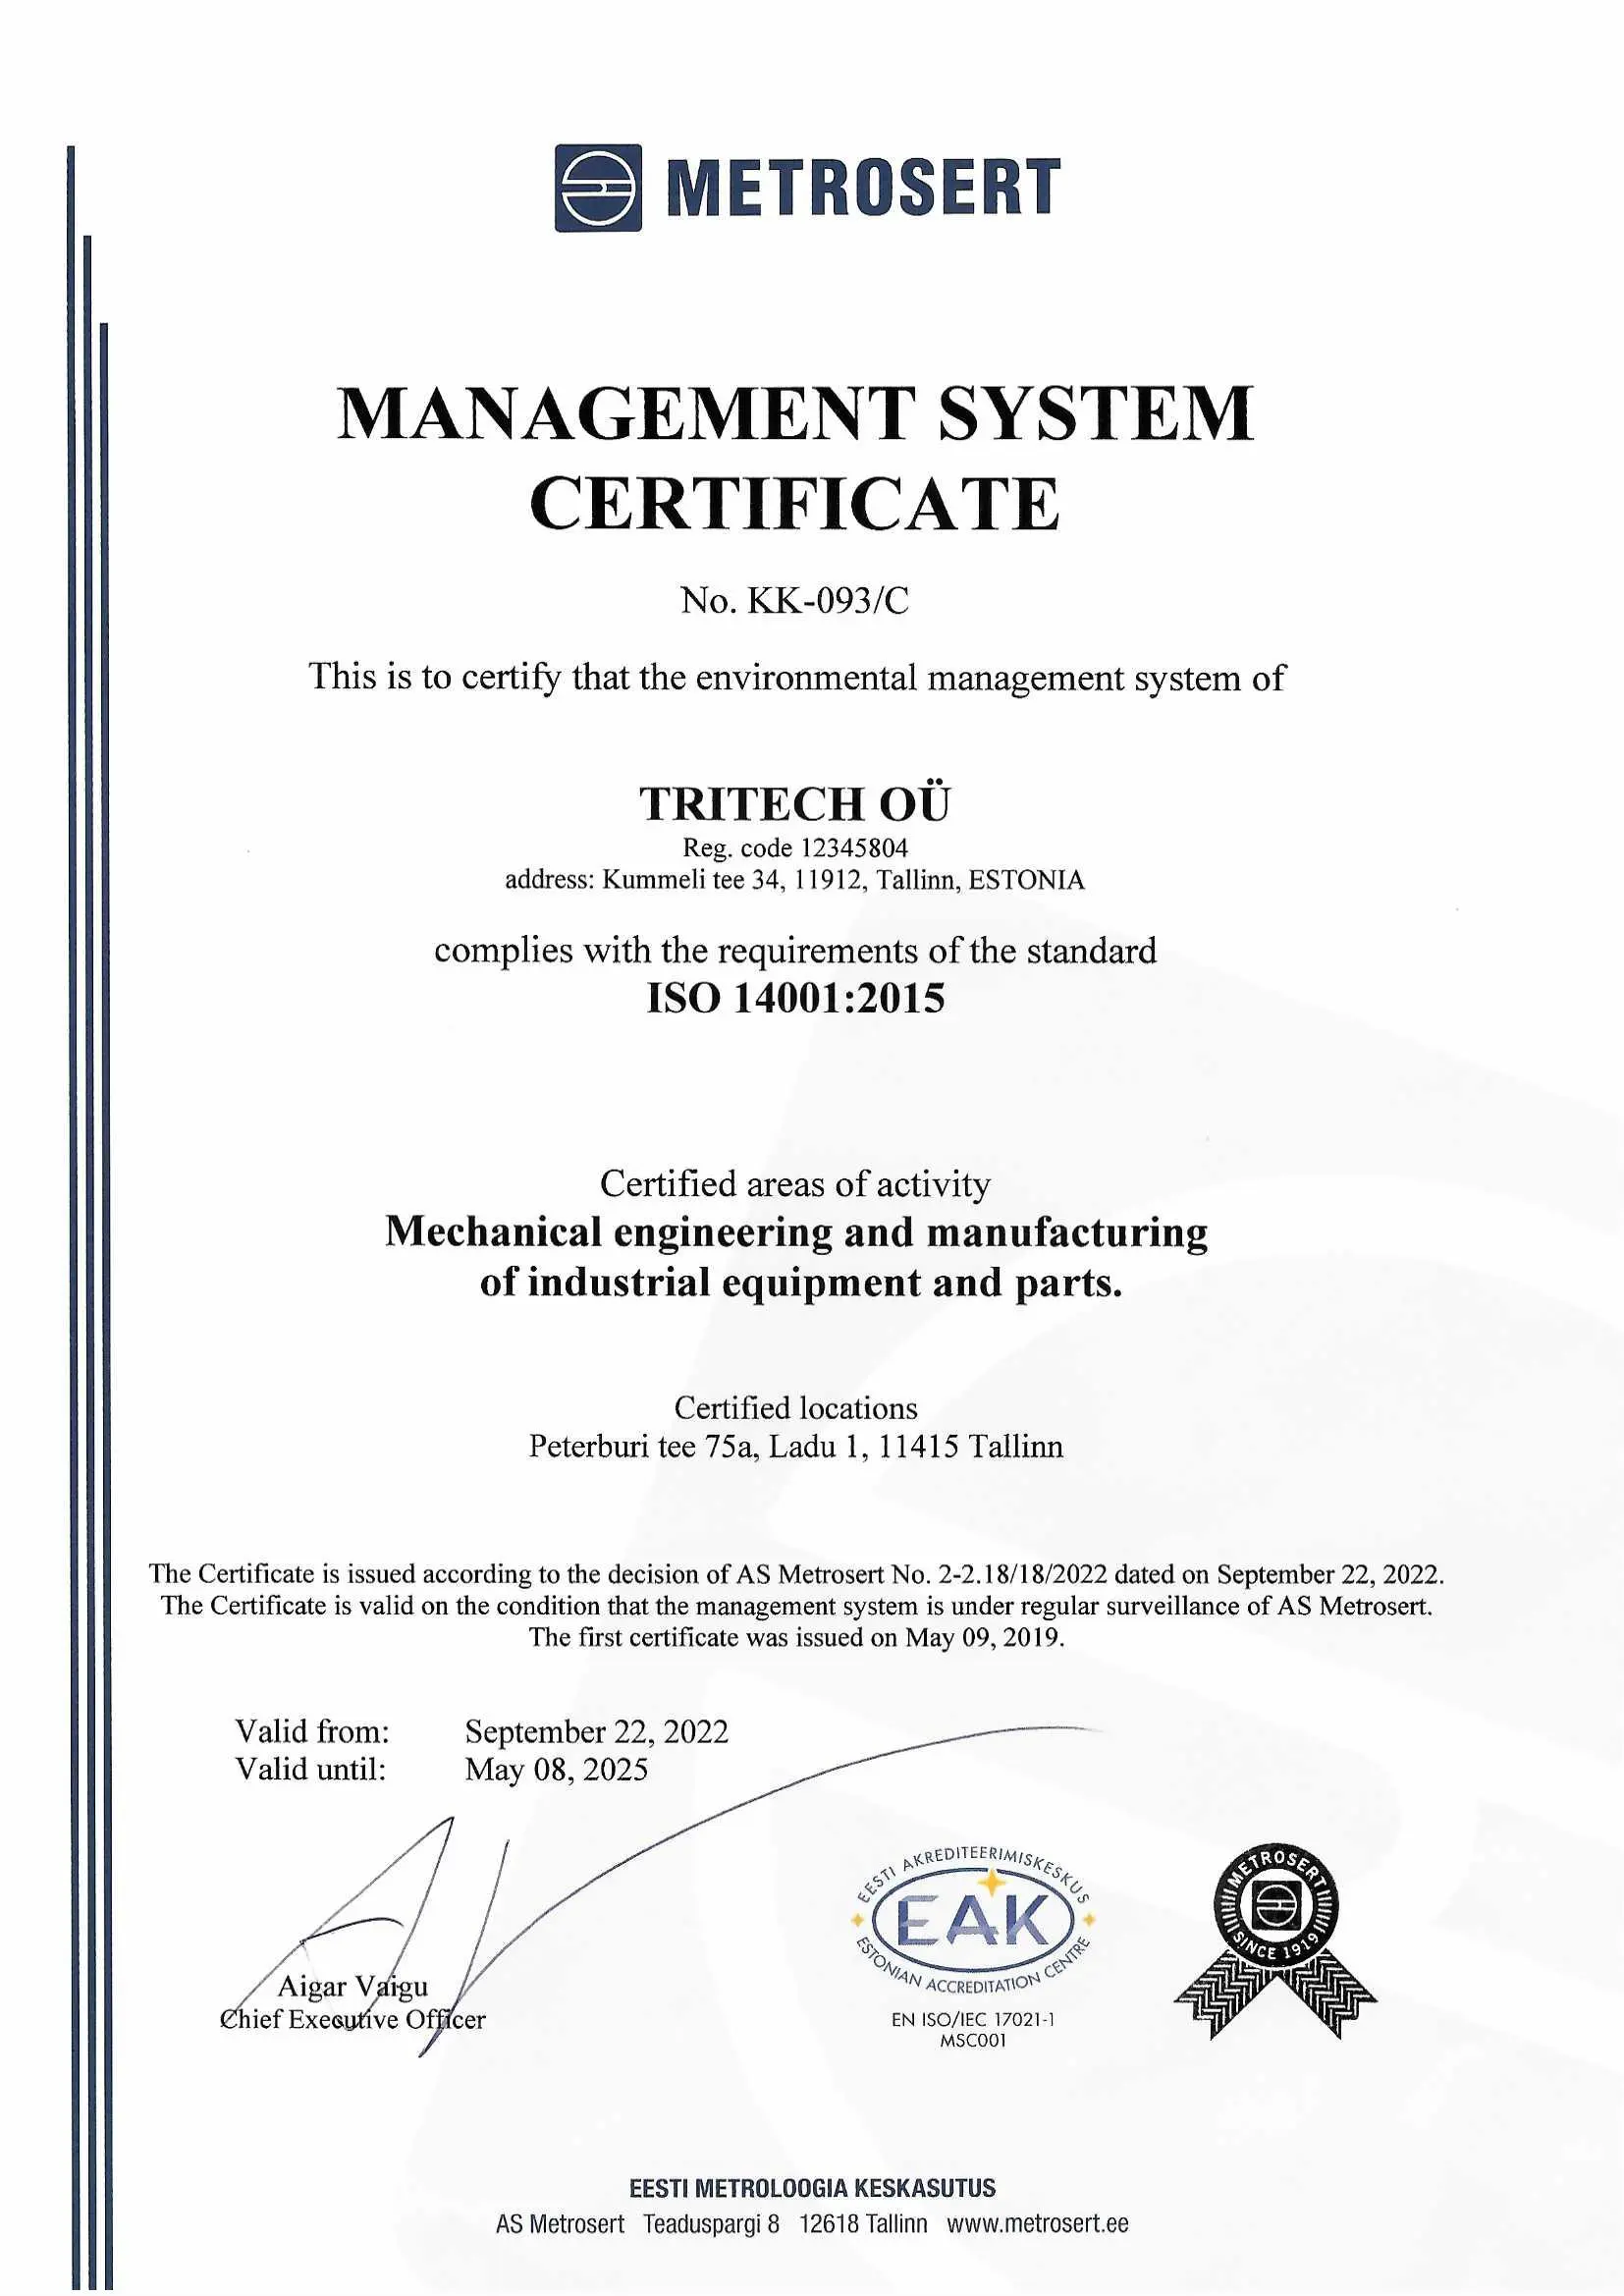 14001:2015 certificate